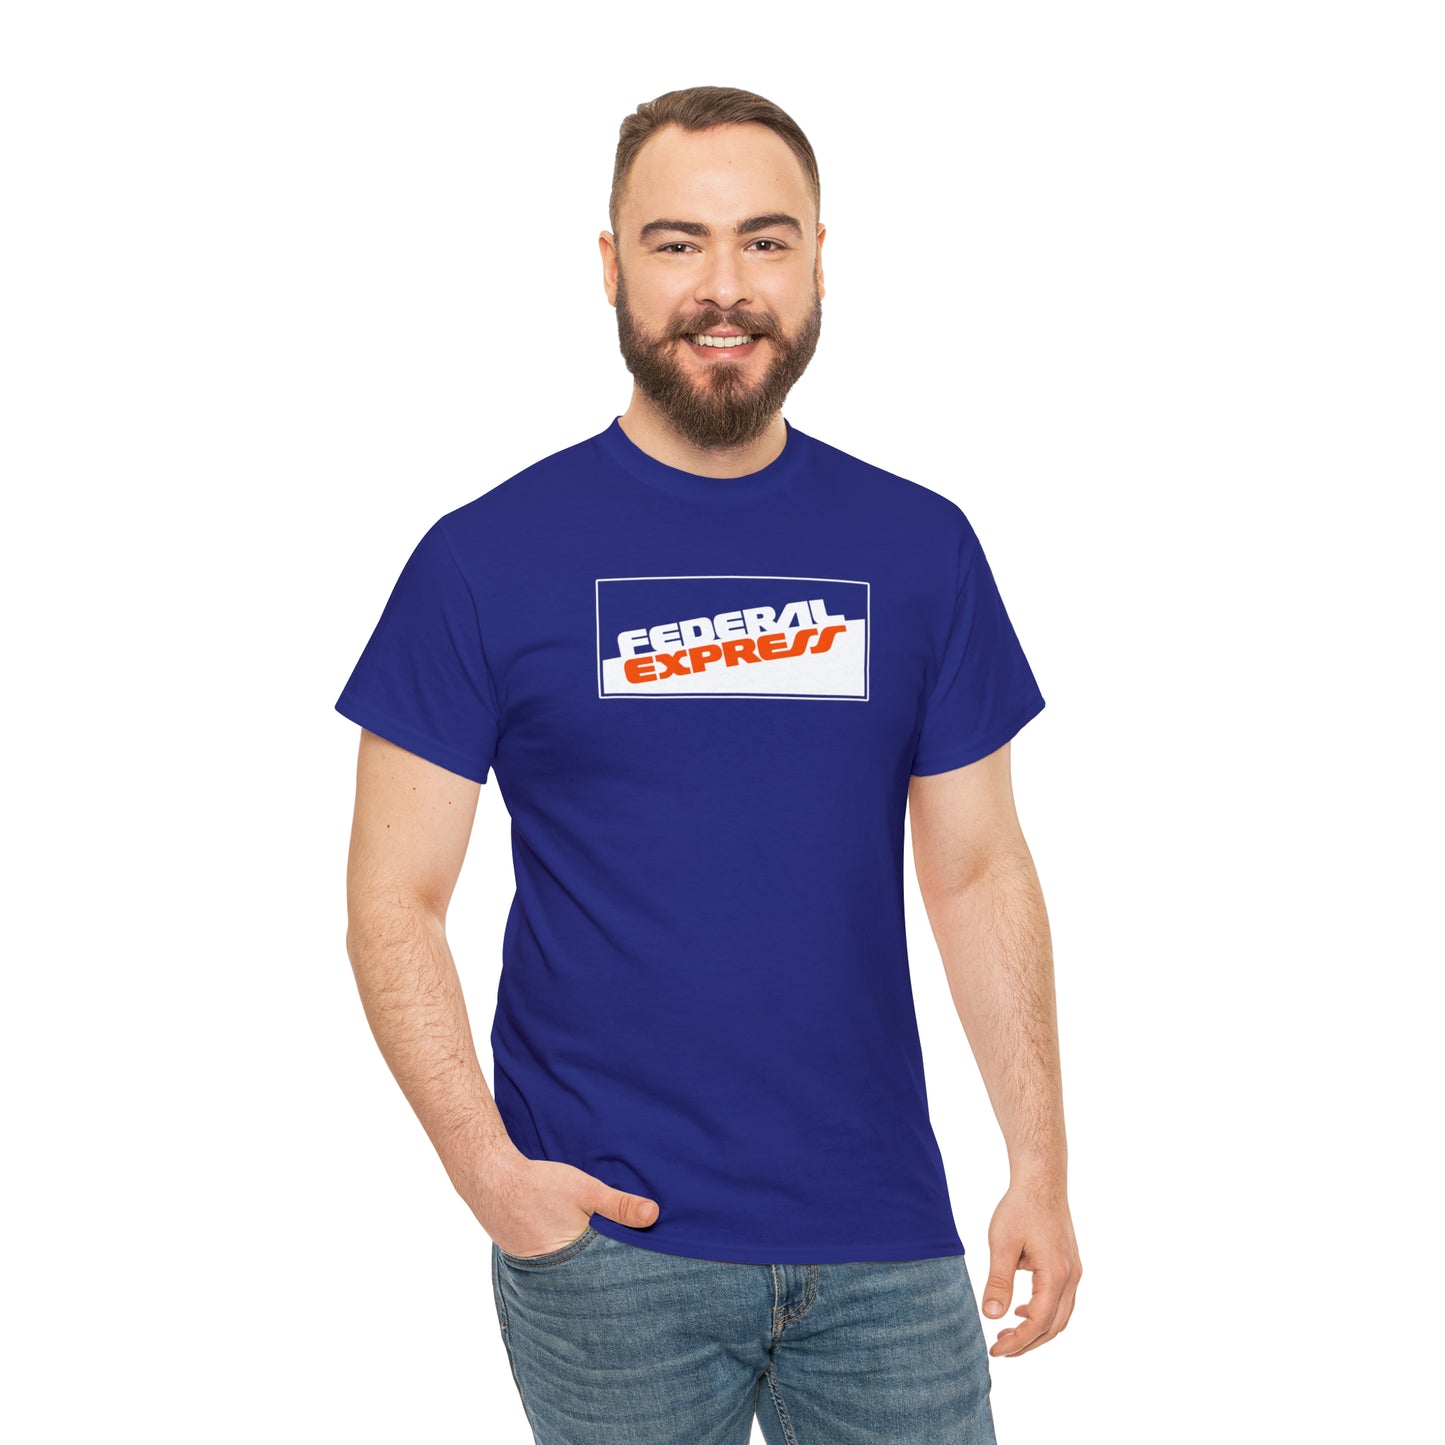 Federal Express T-Shirt